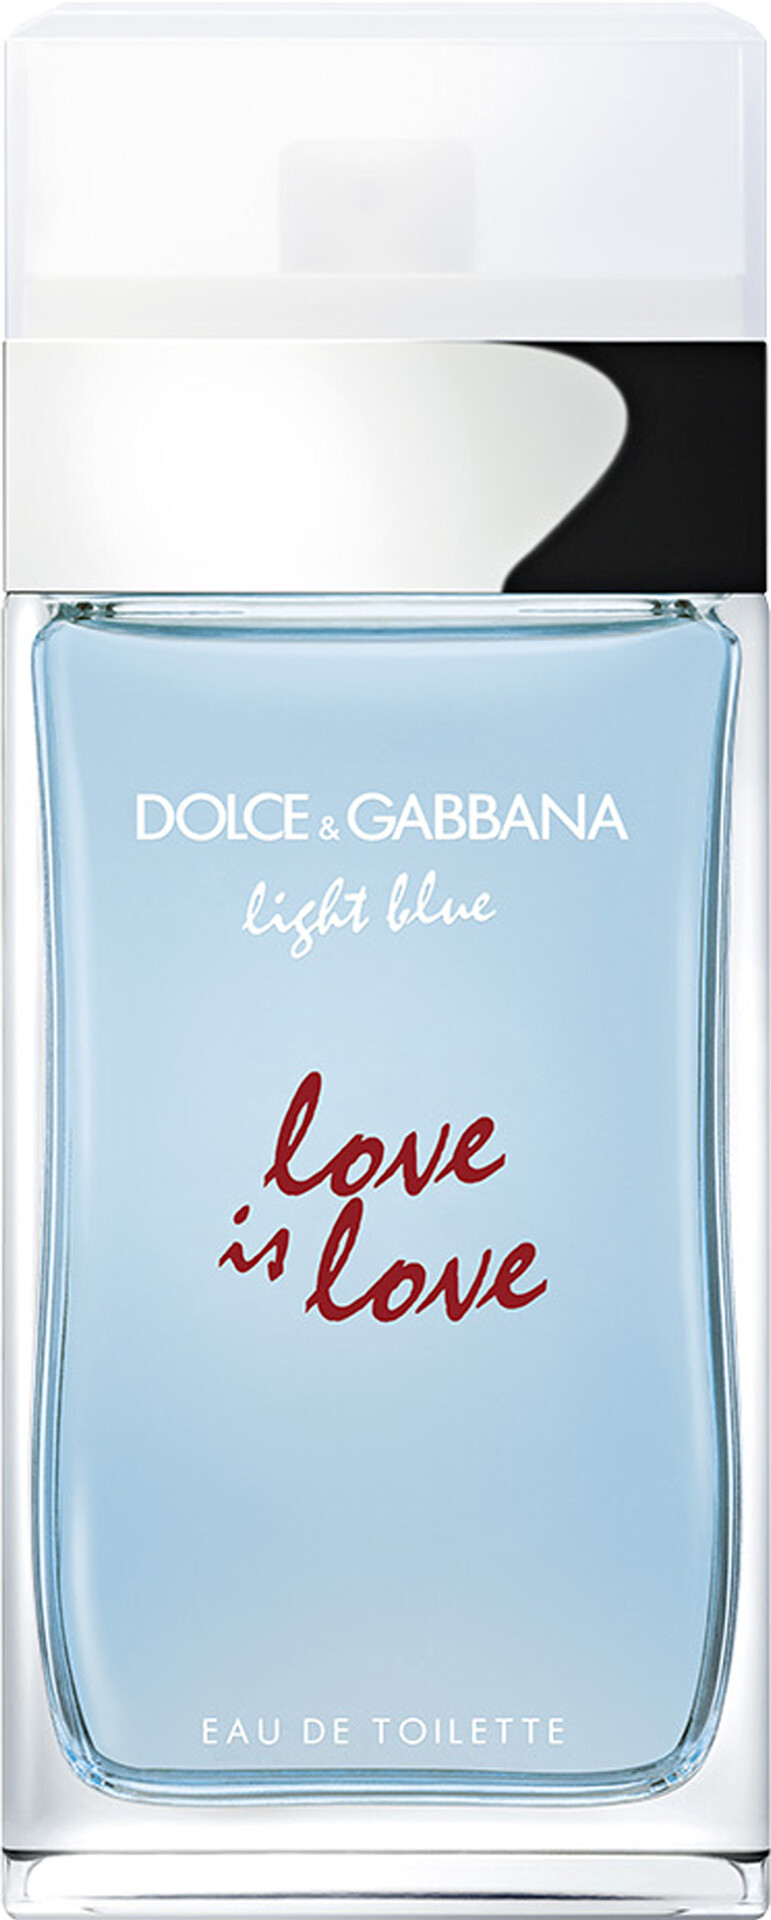 dolce & gabbana light blue notes